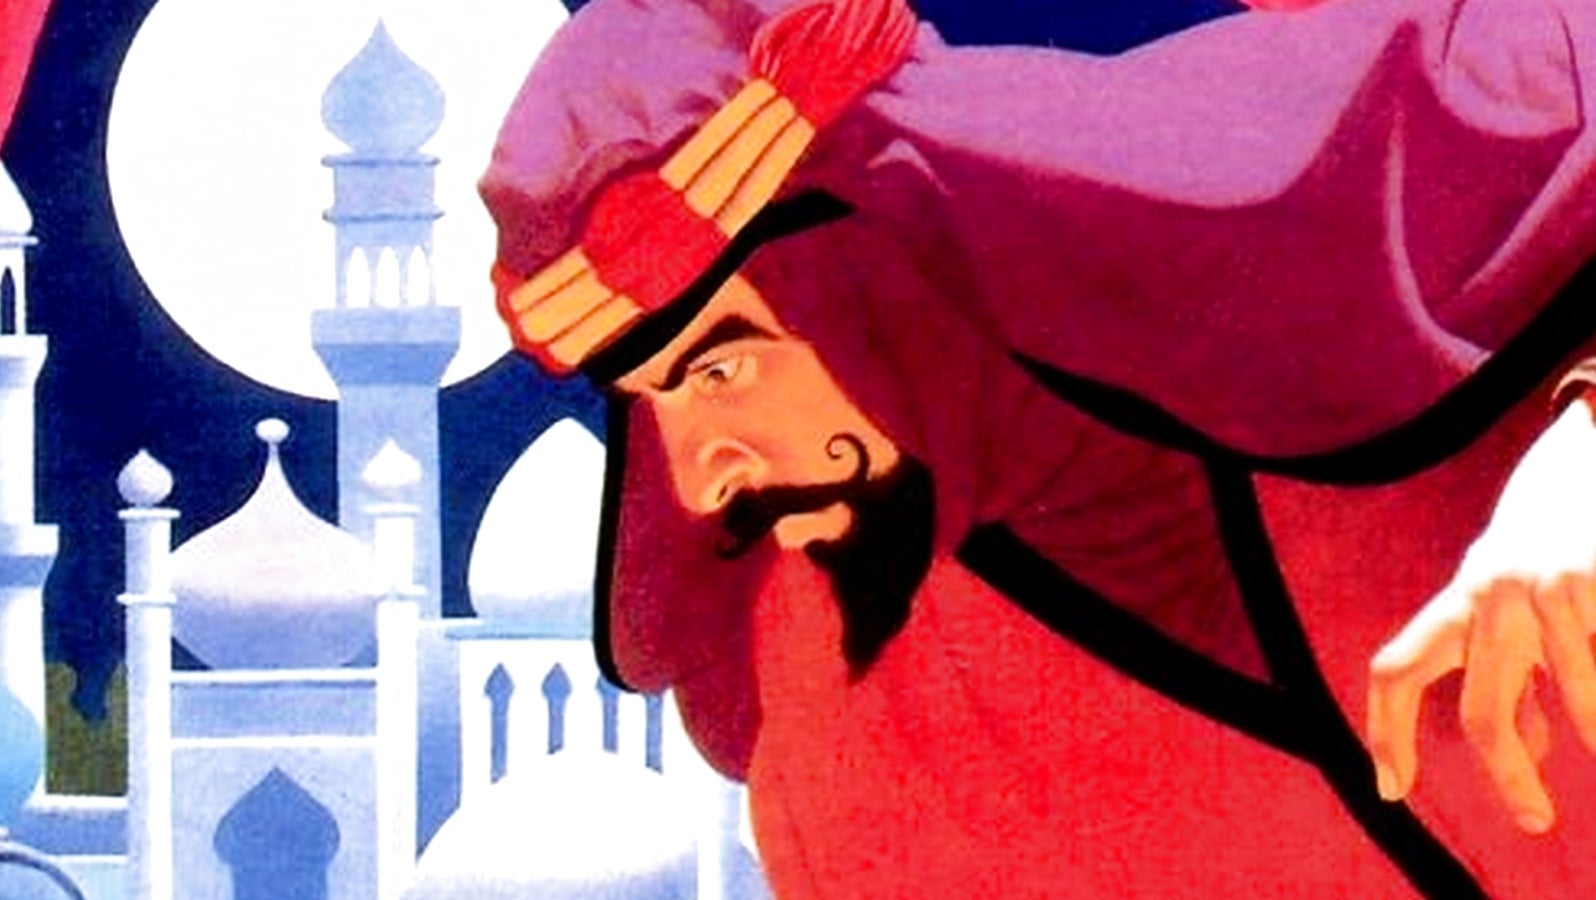 Bilder zu The Making of Prince of Persia: Journals 1985-1993 Buchrezension: Ein persönliches Erlebnis